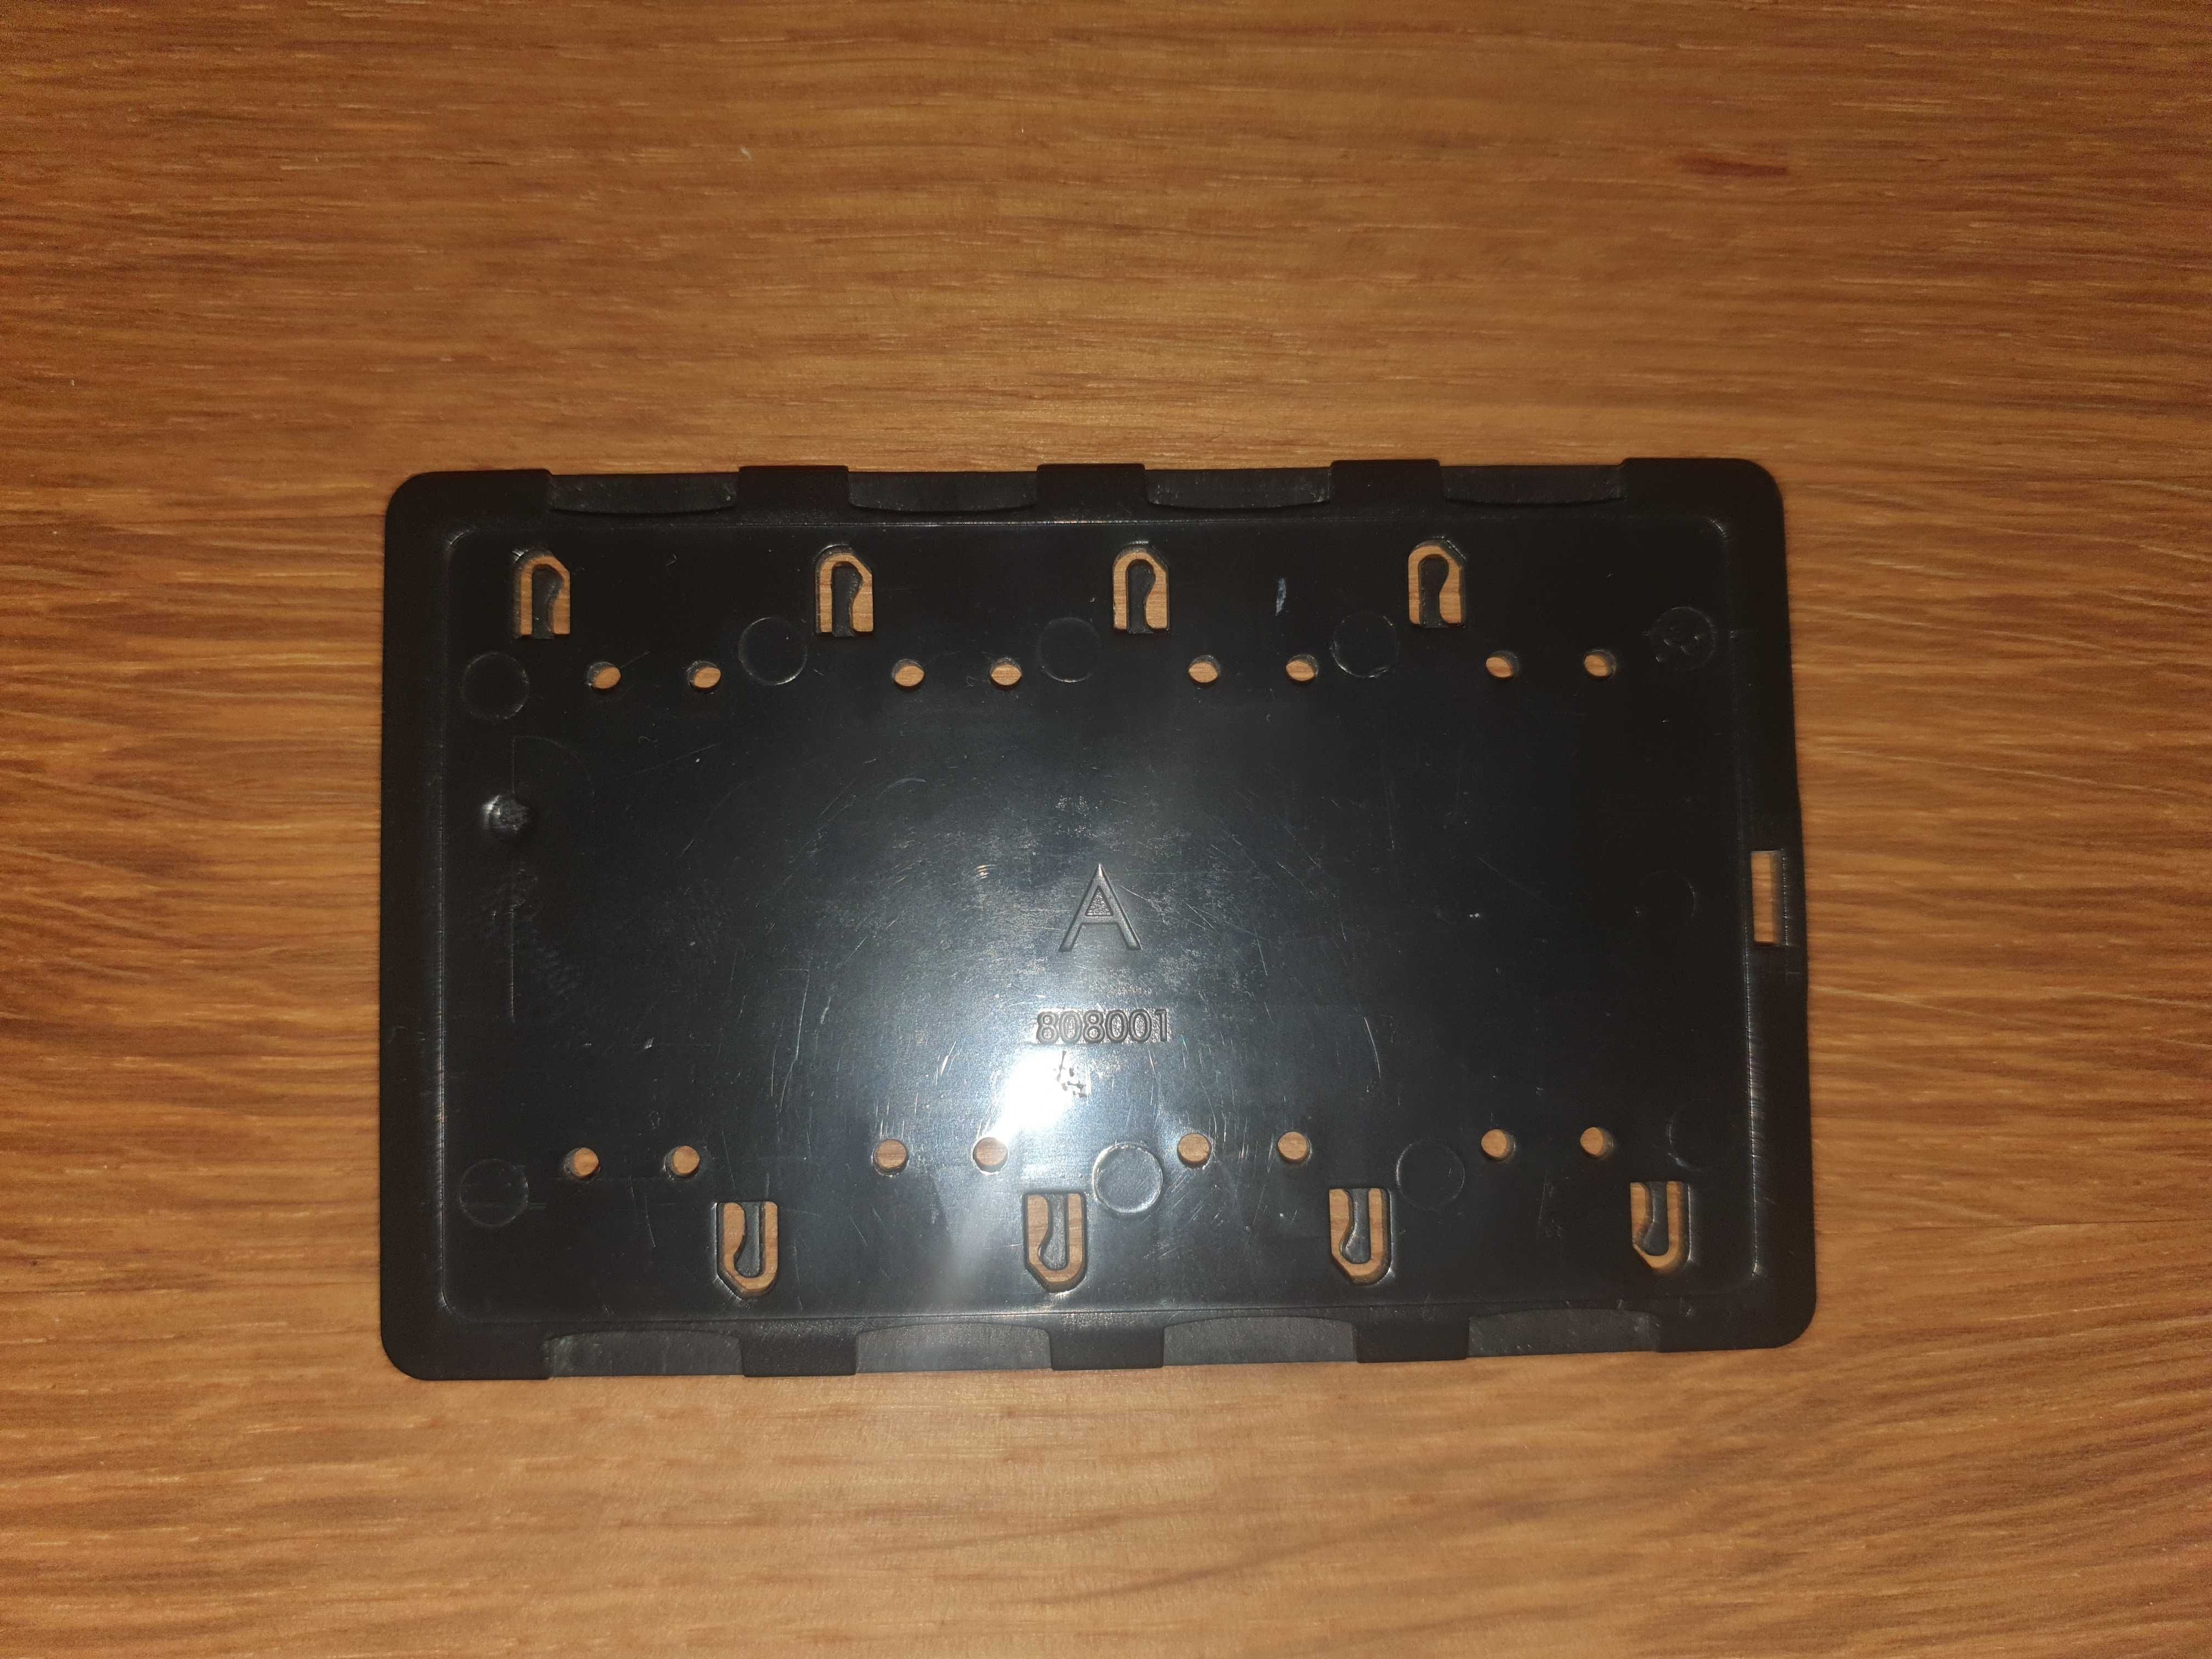 Pokrowiec/organizer na osiem kart microSD wielkości karty kredytowej